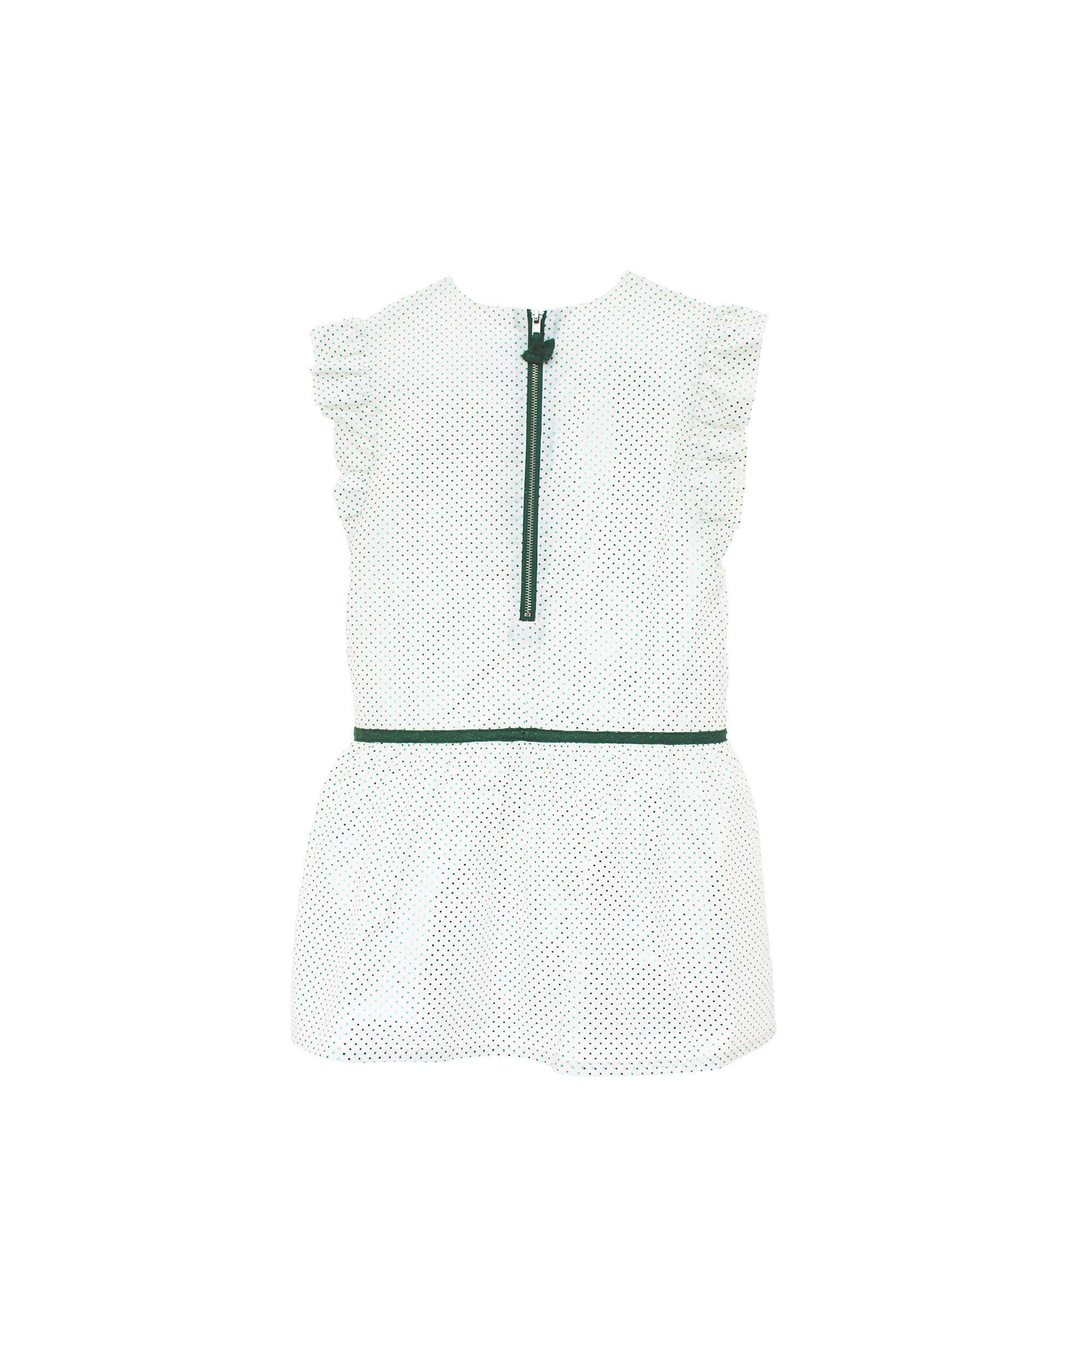 Vestido blanco con puntos verdes tornasol y cinta cintura verde terciopelo